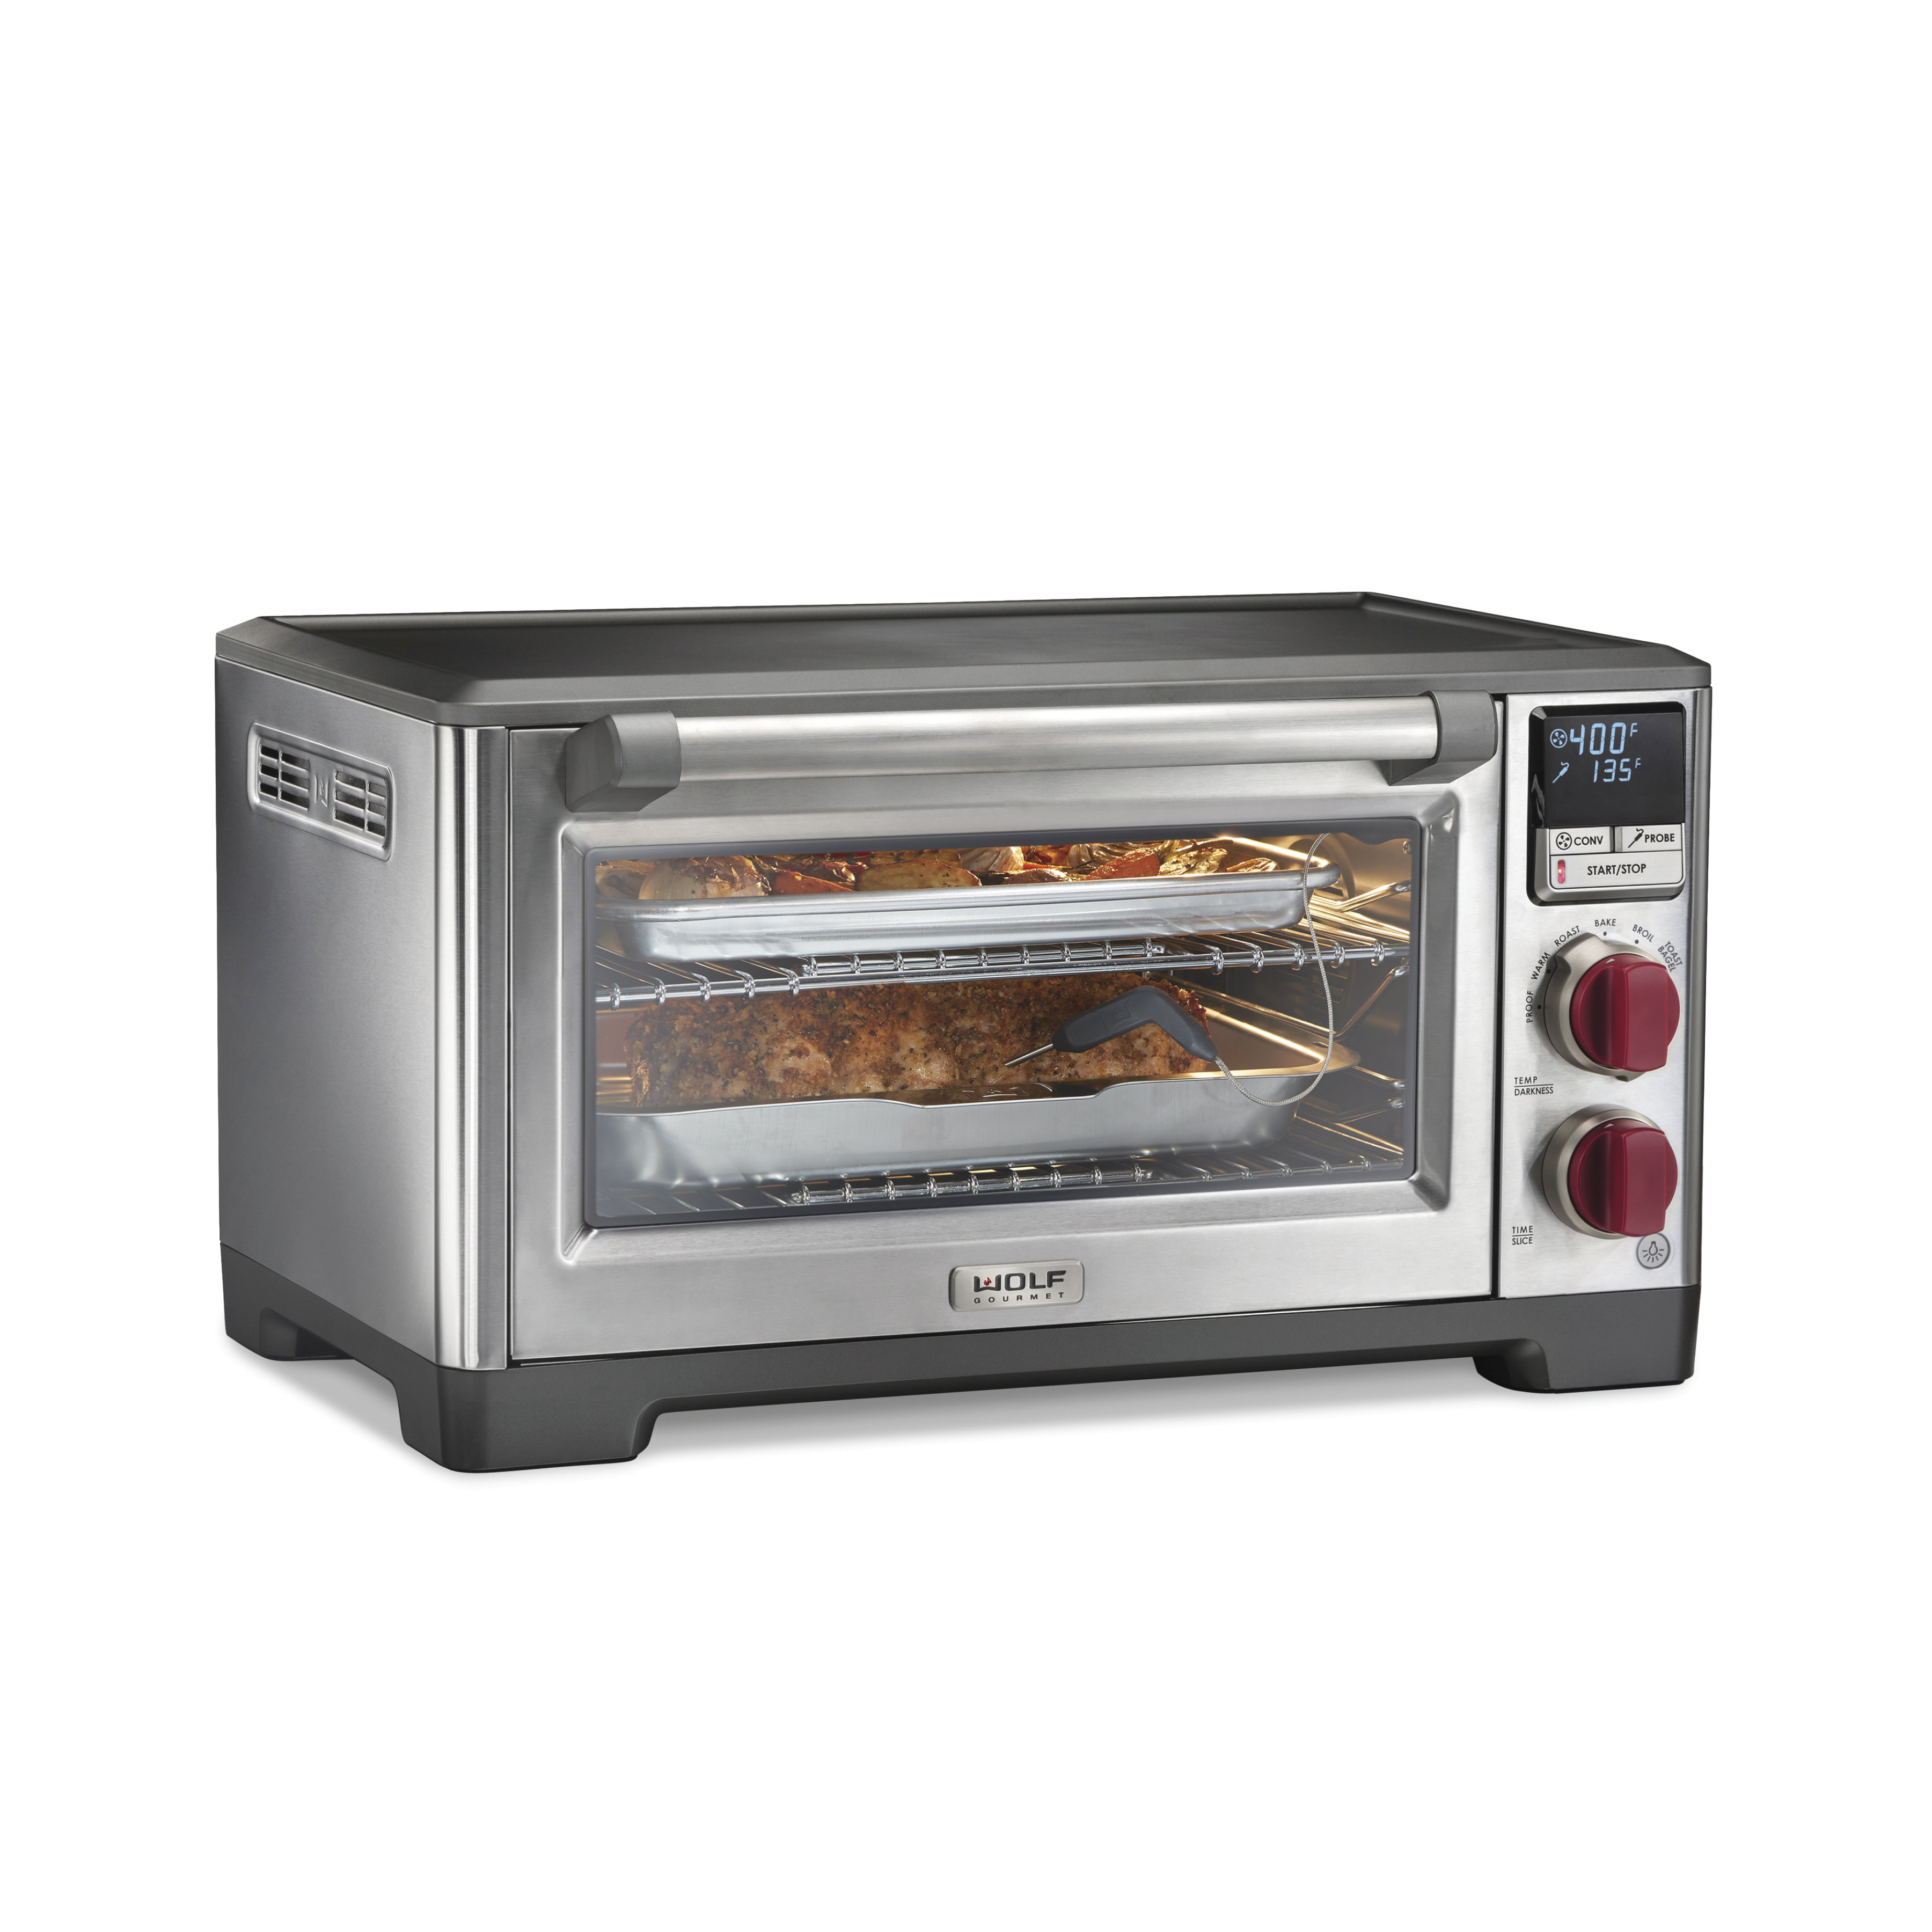 https://assets.wfcdn.com/im/06446702/compr-r85/2599/259908438/wolf-gourmet-toaster-oven.jpg